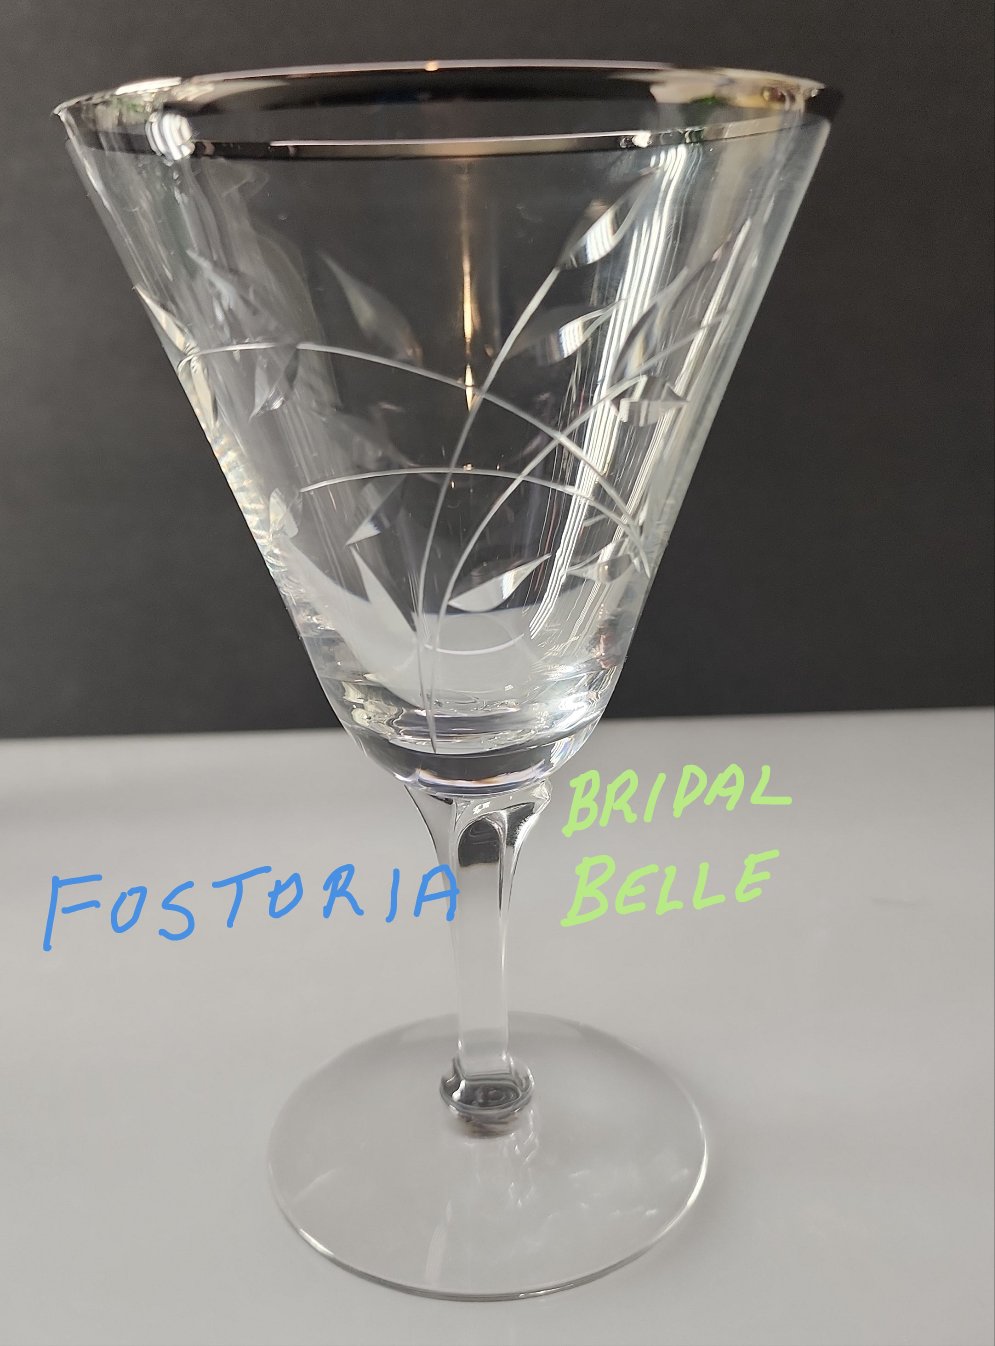 Fostoria bridal belle pattern glass goblet Platinium